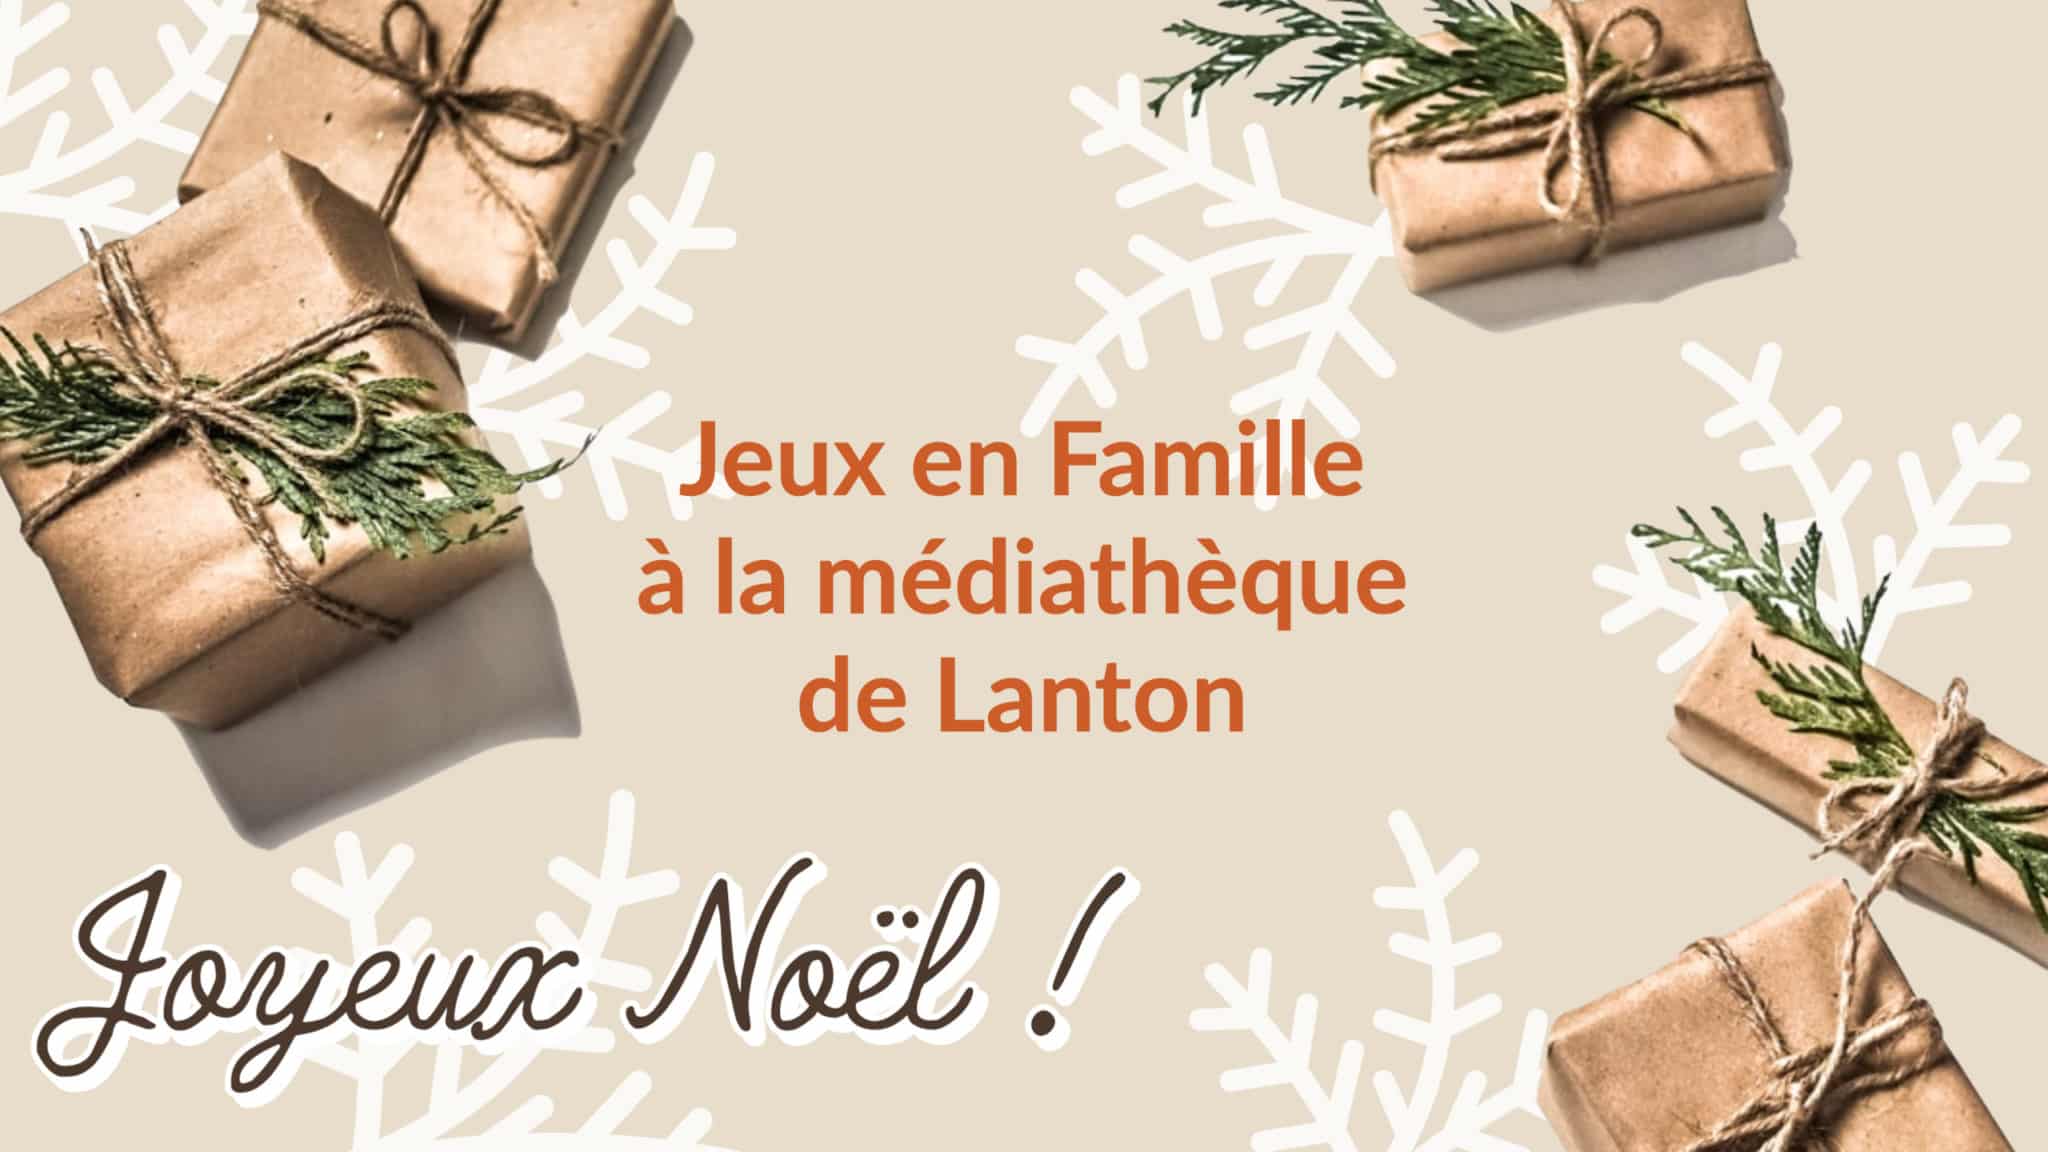 Jeux en famille : la médiathèque de Lanton vous attend les 20 décembre 2022 dès 20h et 23 décembre 2022 de 14h à 18h